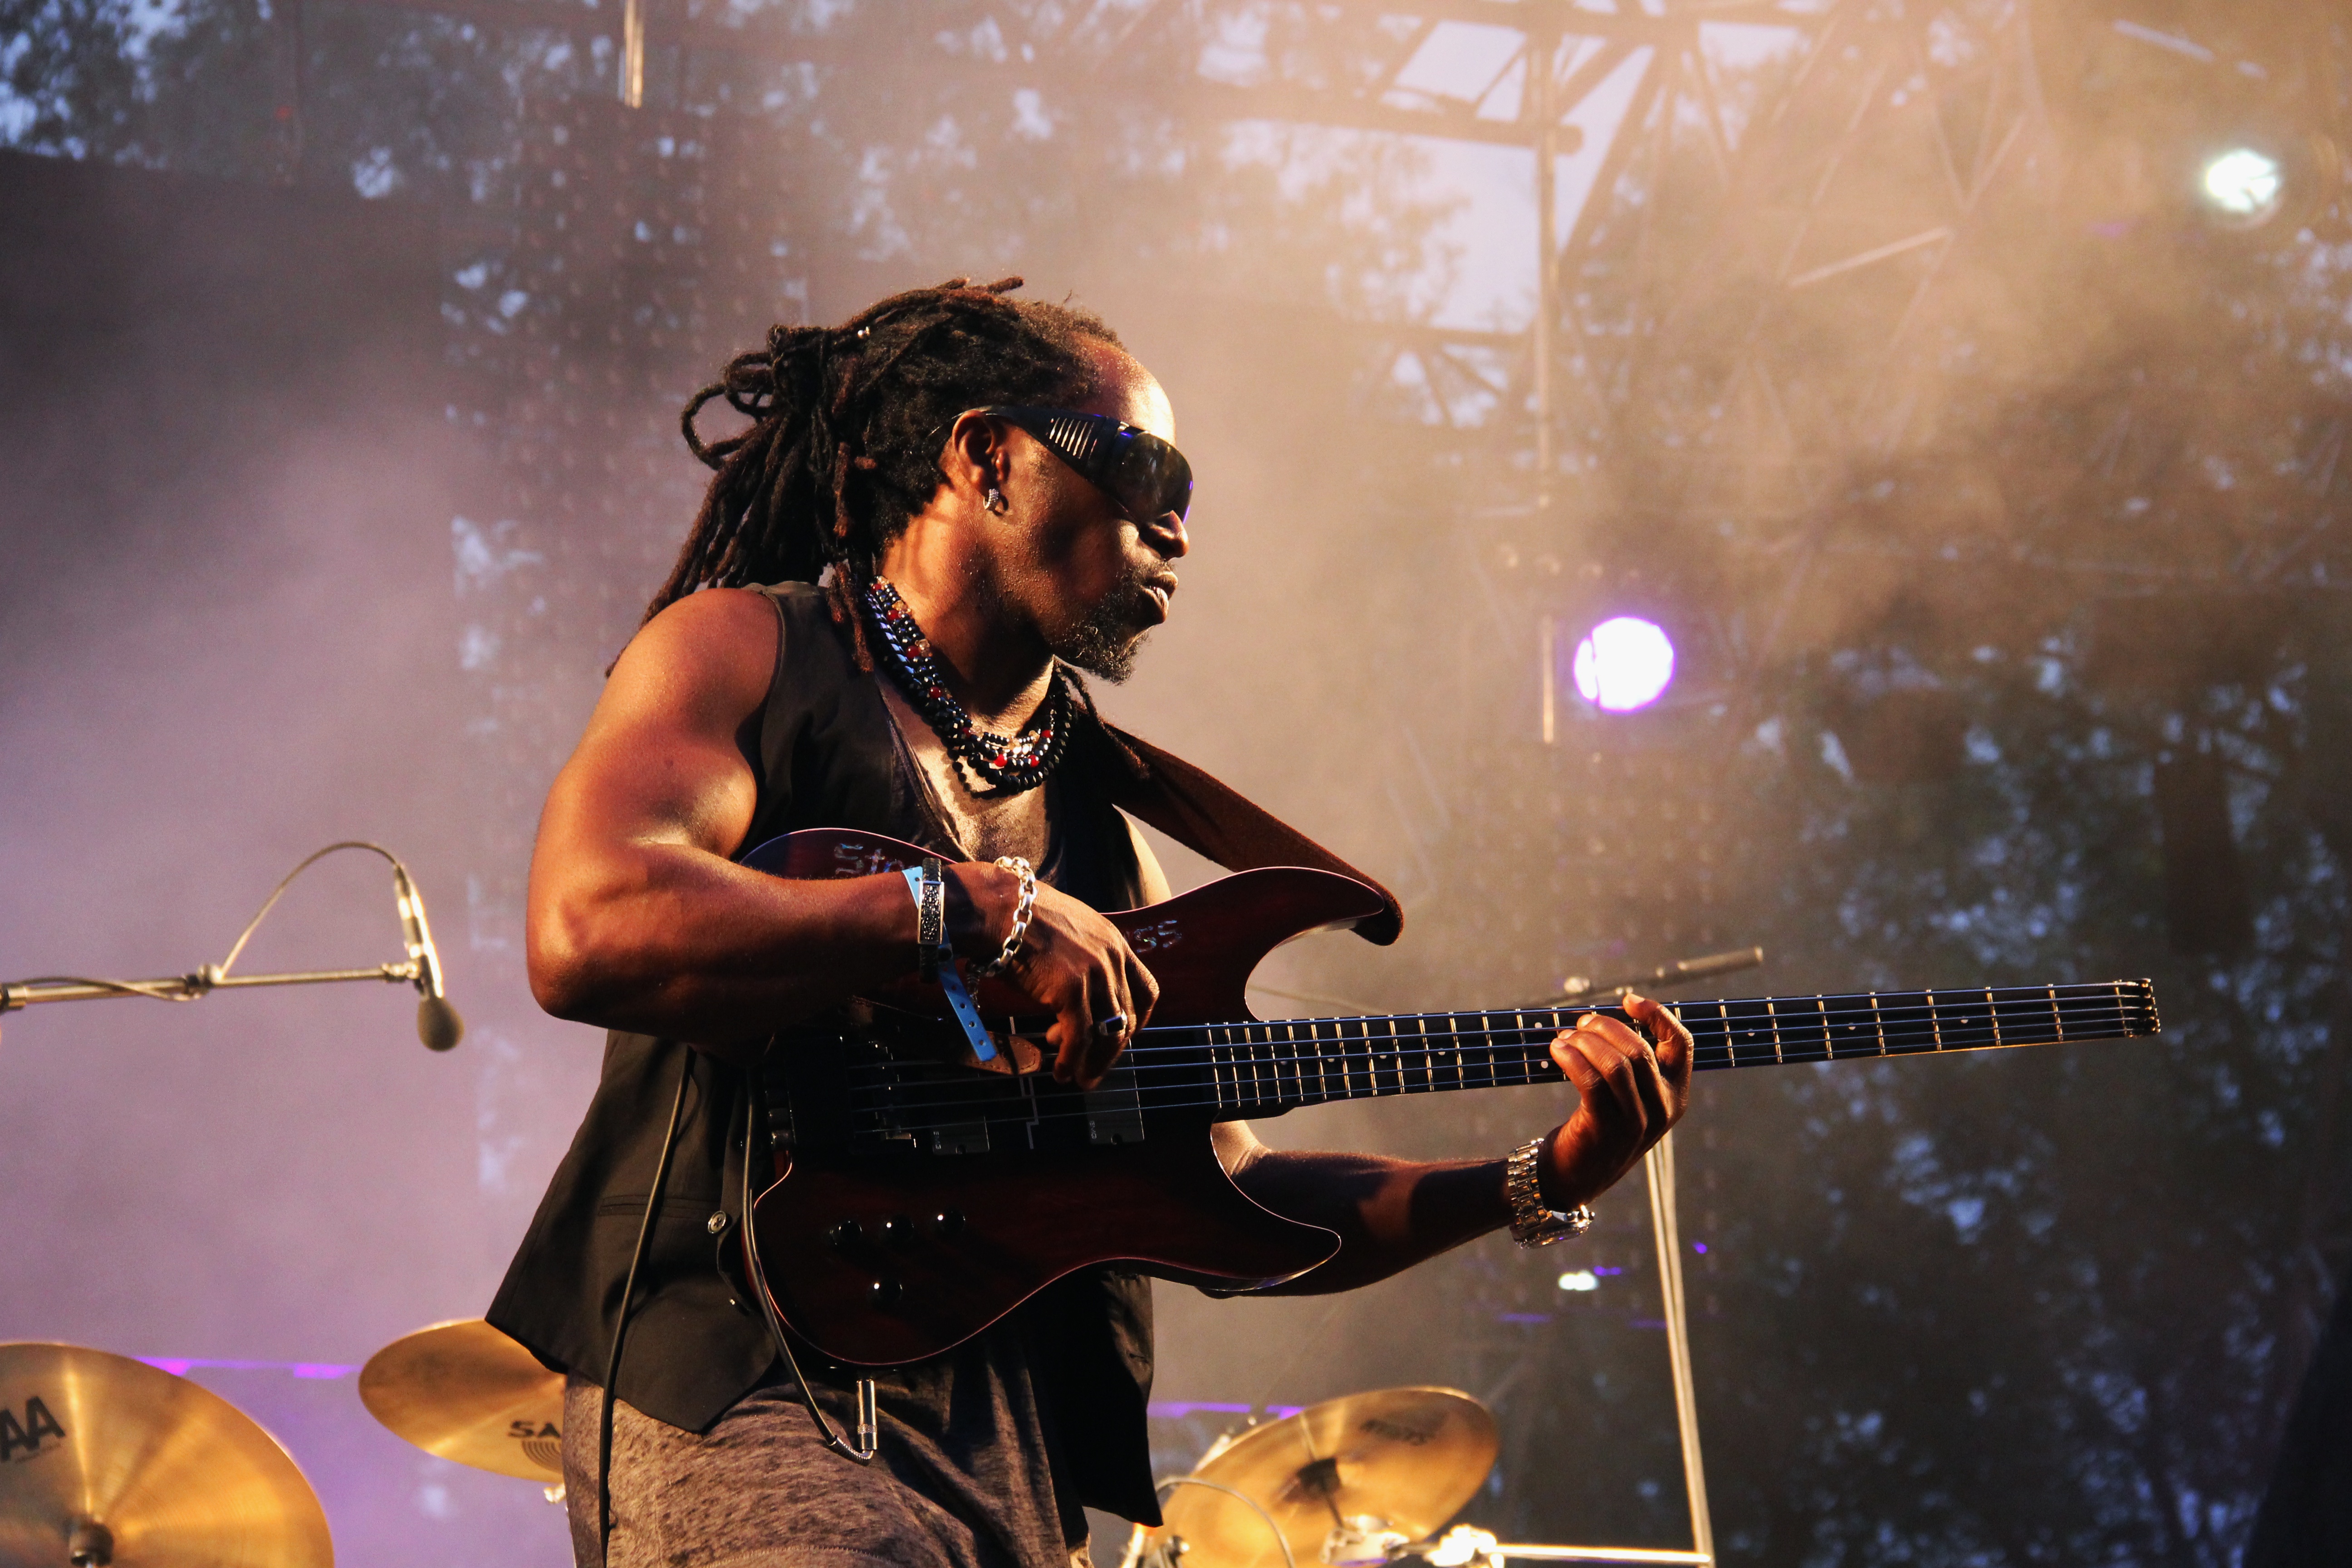 Datei:04- dubtonic kru, live garance reggae festival 2014 - fred reggaelover perry.jpg